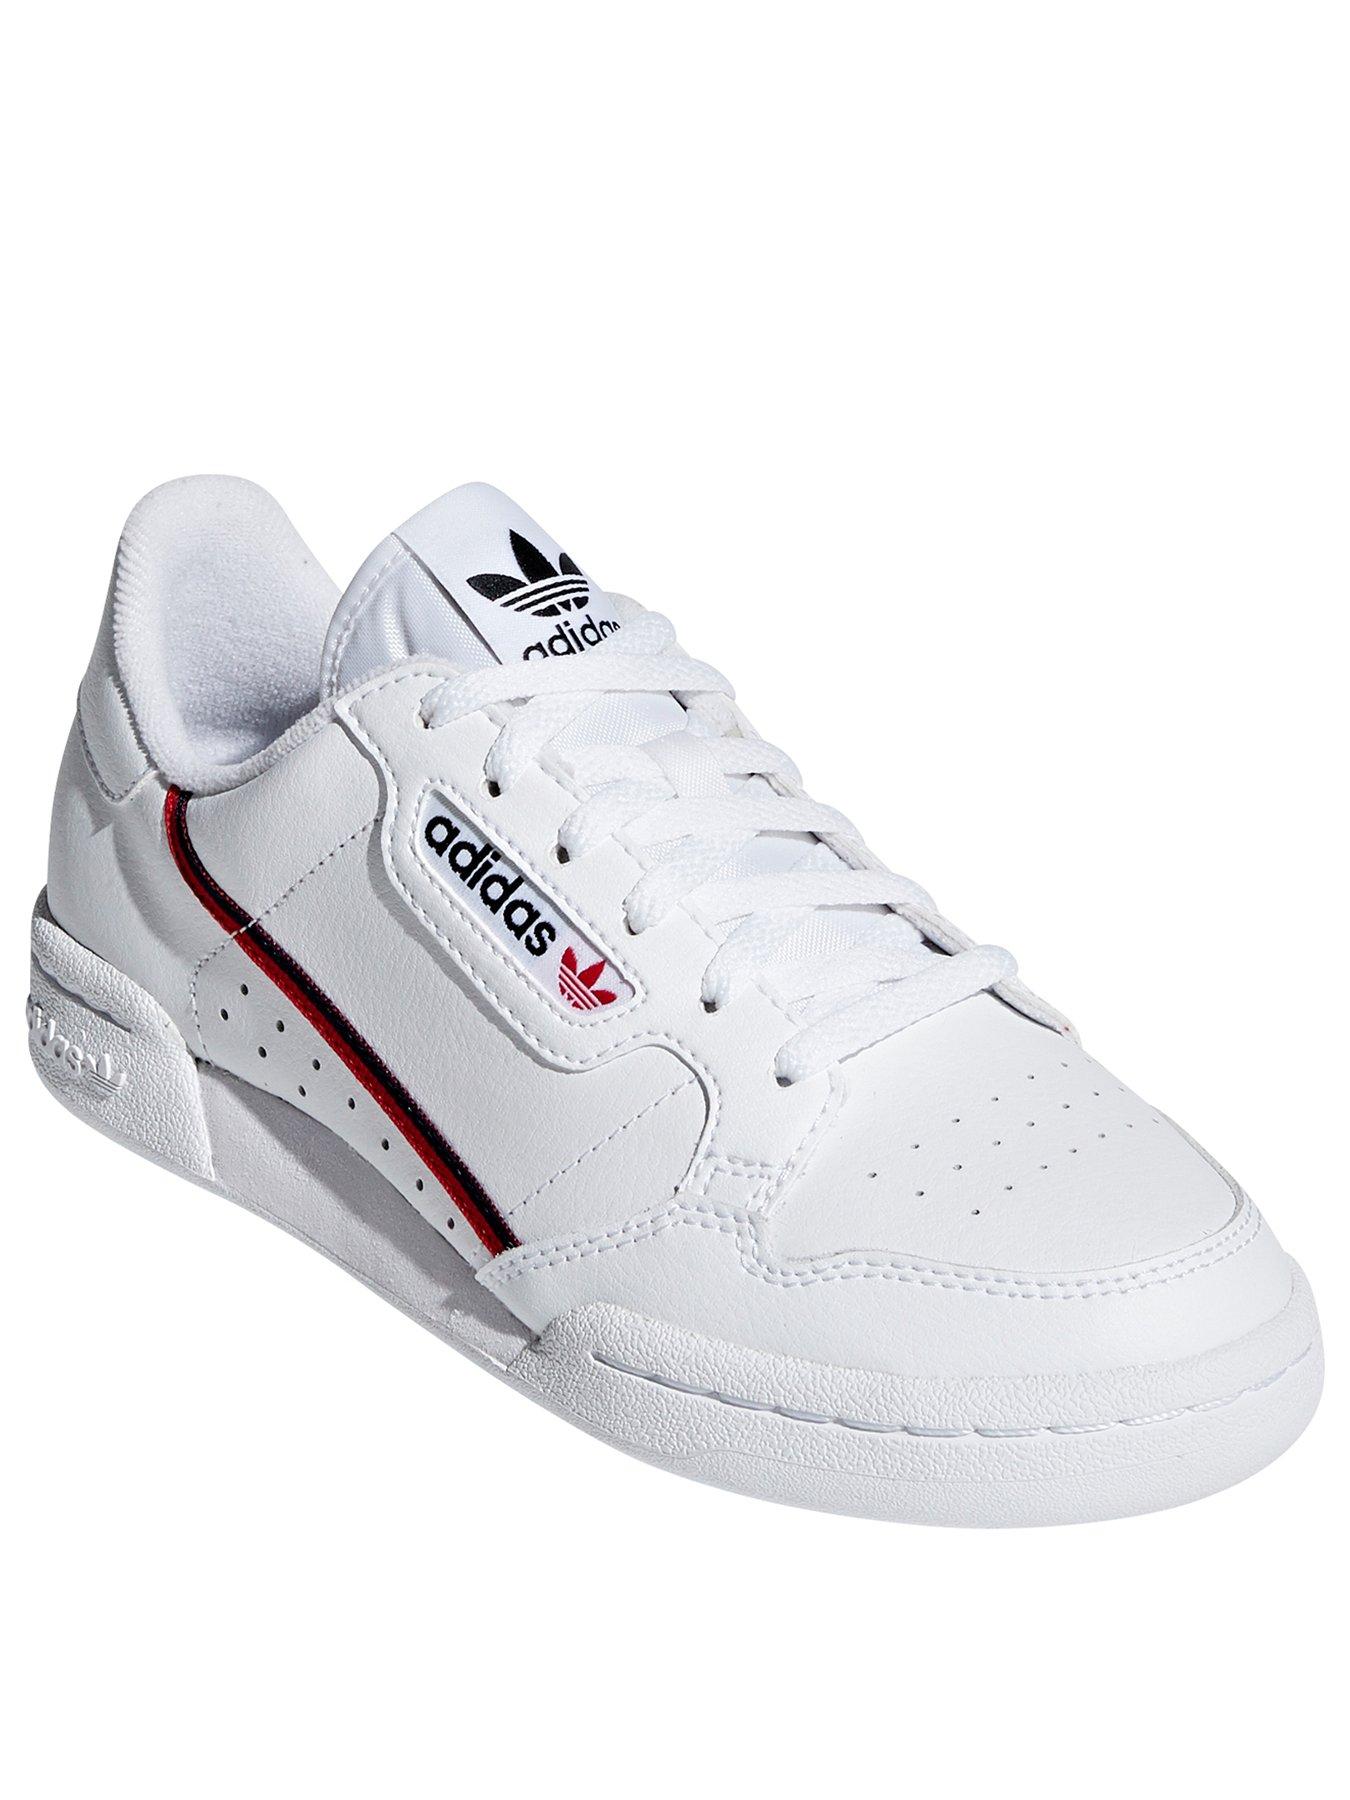 adidas Originals CONTINENTAL 80 Junior Trainers - White 